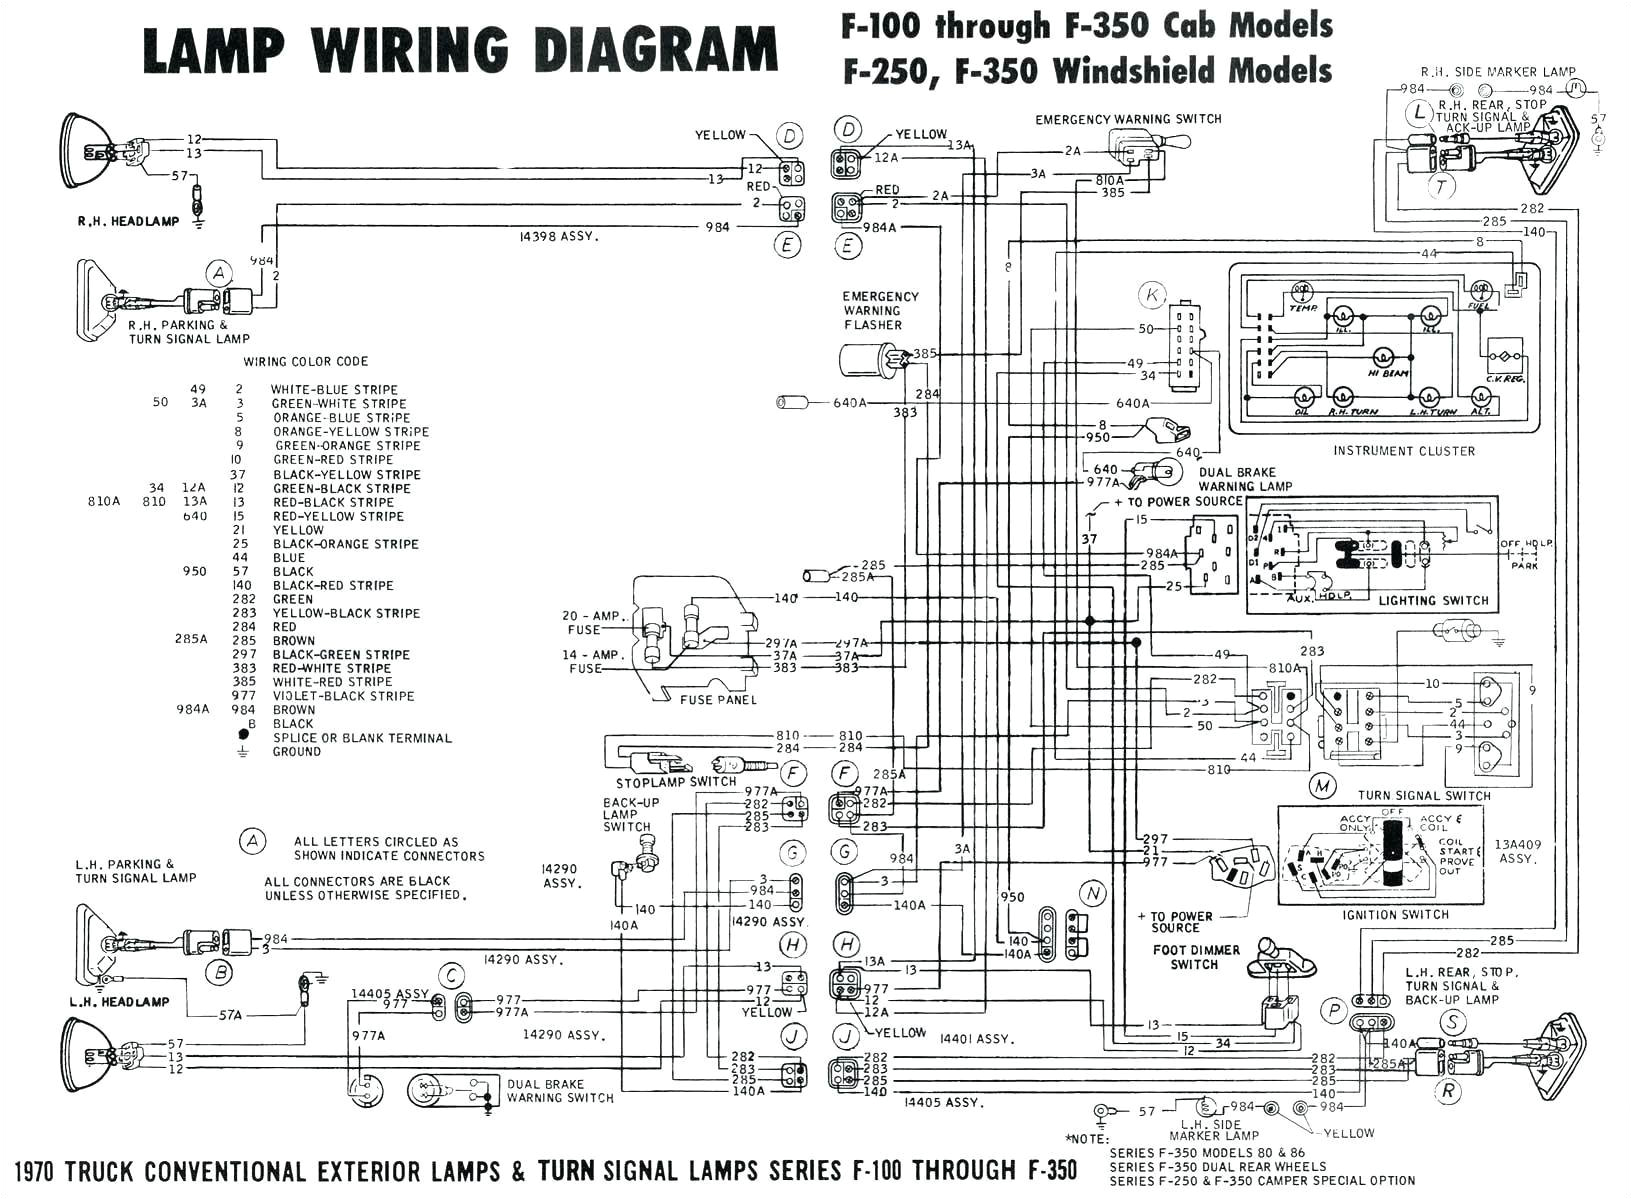 1997 audi wiring diagram wiring diagram blog 1997 audi a4 stereo wiring diagram 97 audi a4 wiring diagram